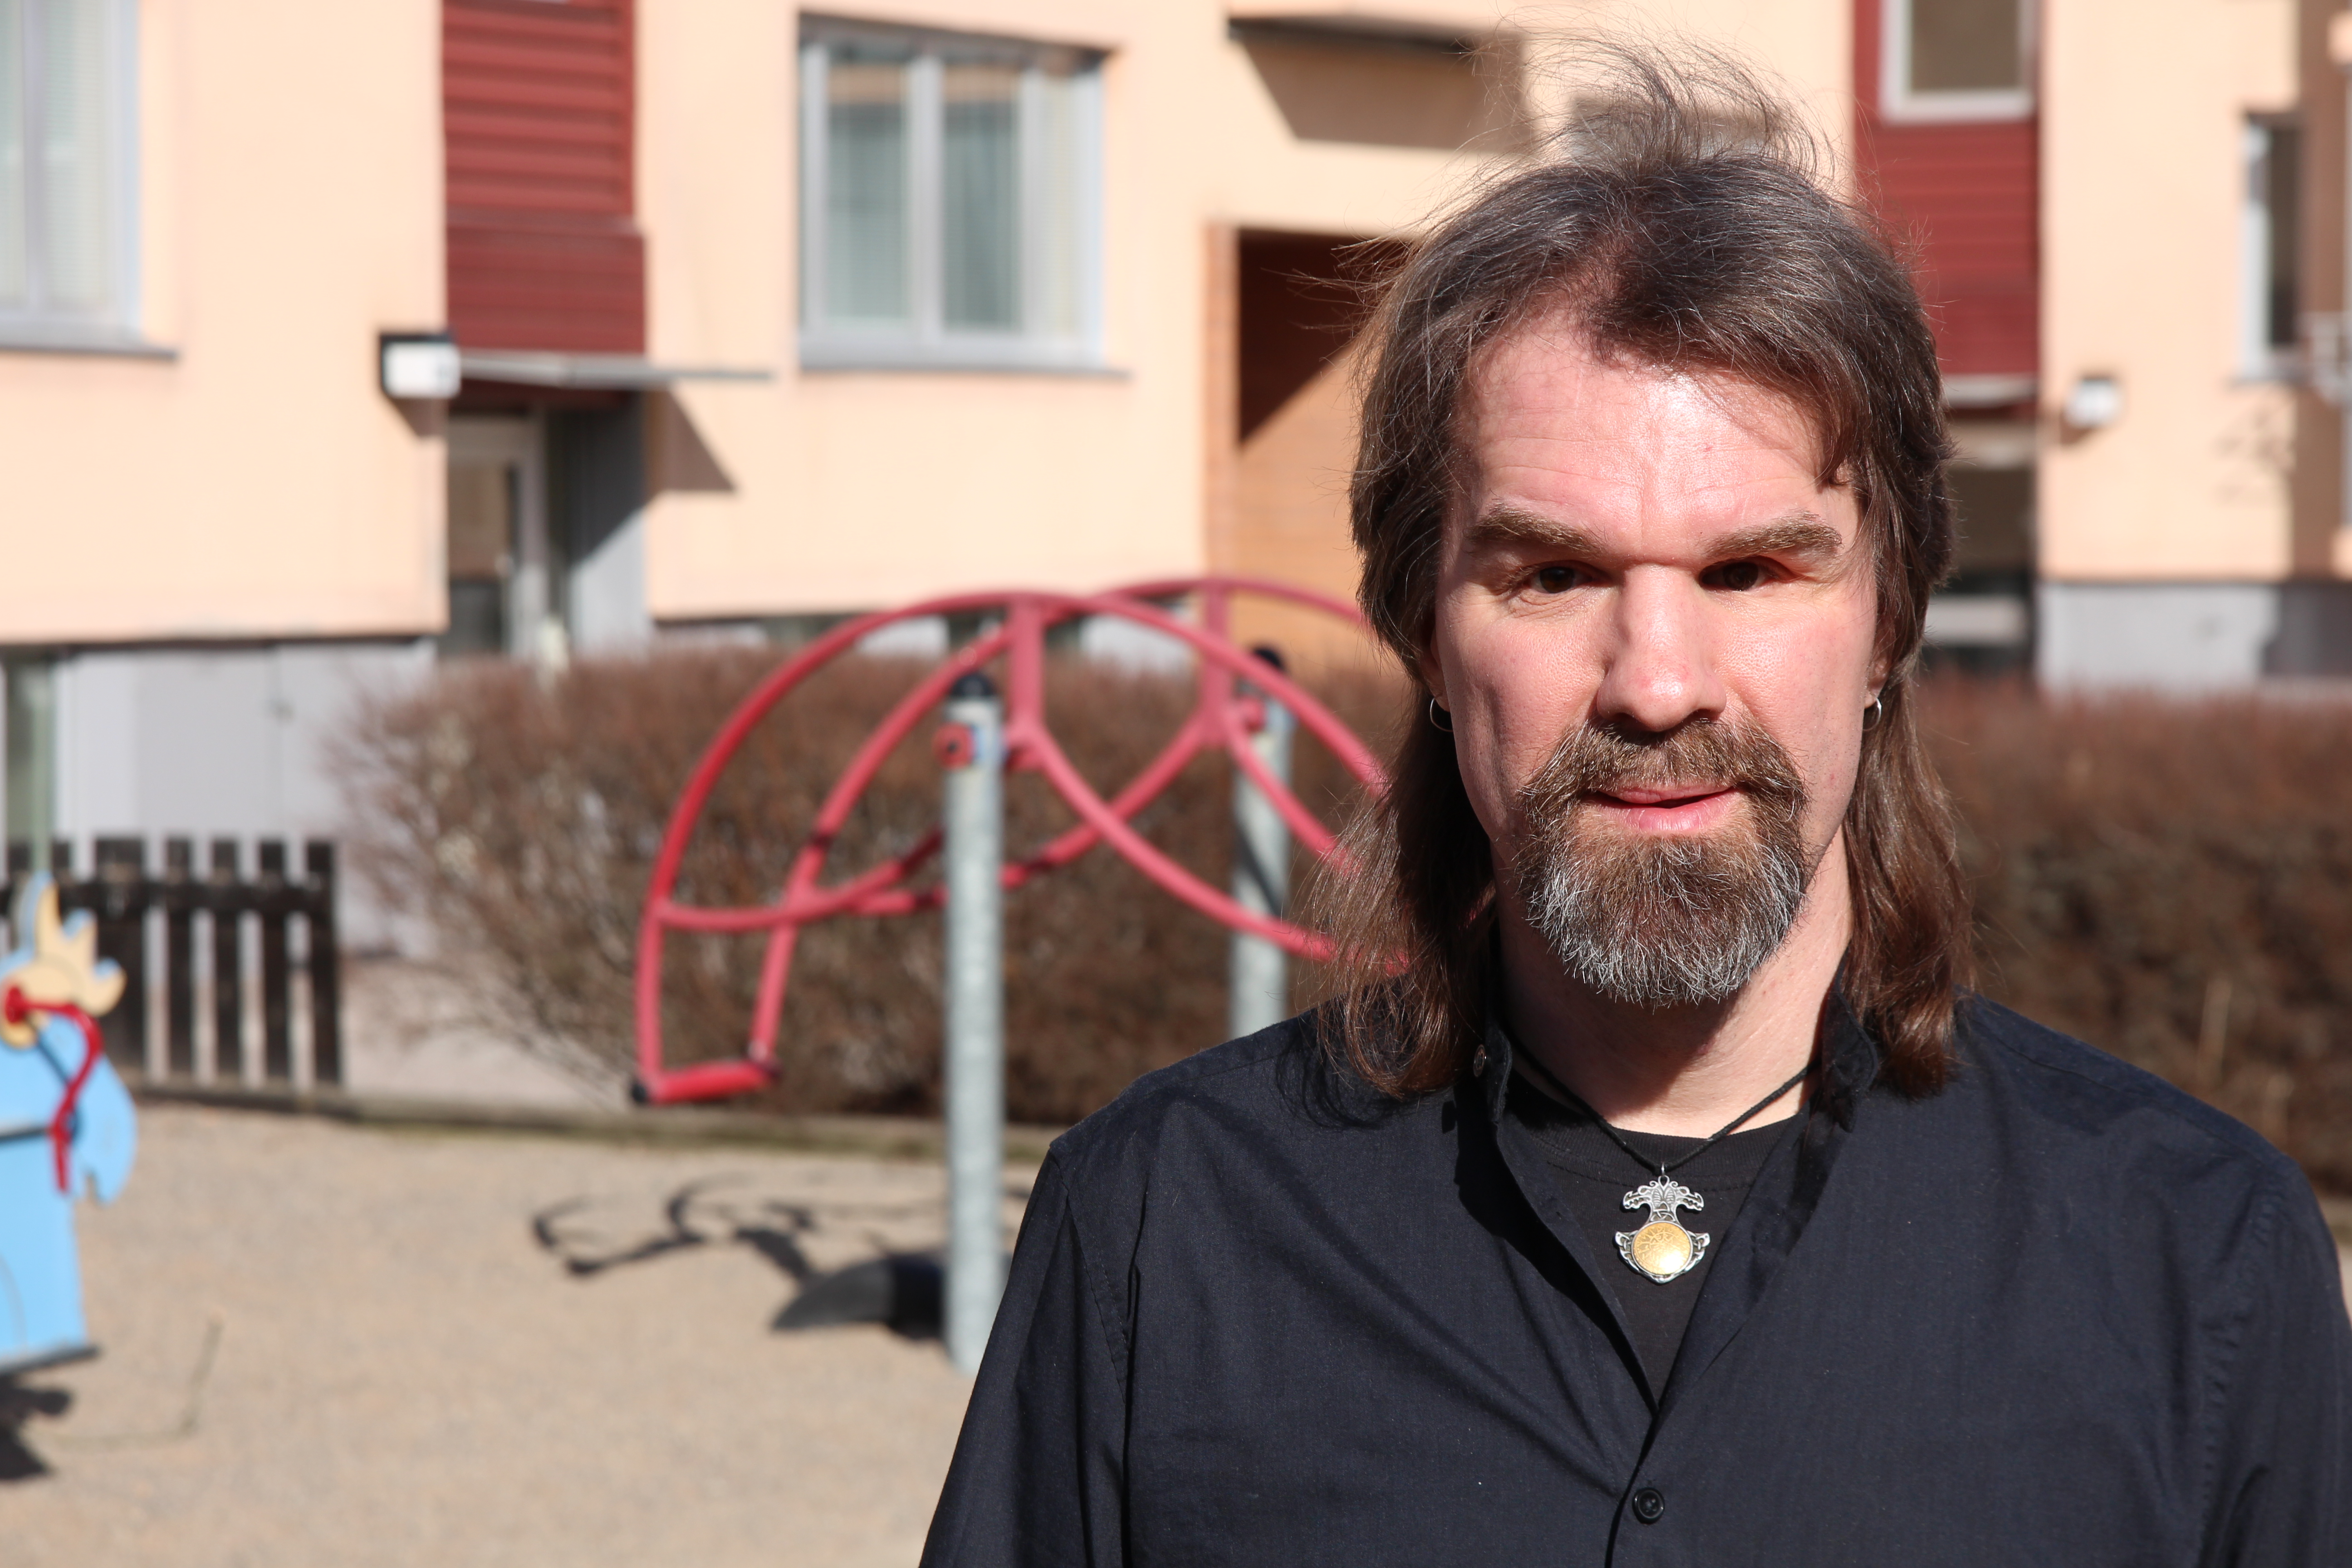 Fredrik Stockhaus Vänsterpartiet. Han är klädd i svart t-shirt och mörkblå skjorta, har ett halsband, långt mörkt hår och gråsprängt skägg. I bakgrunden ser man lekredskap i en lekpark i oskärpa.